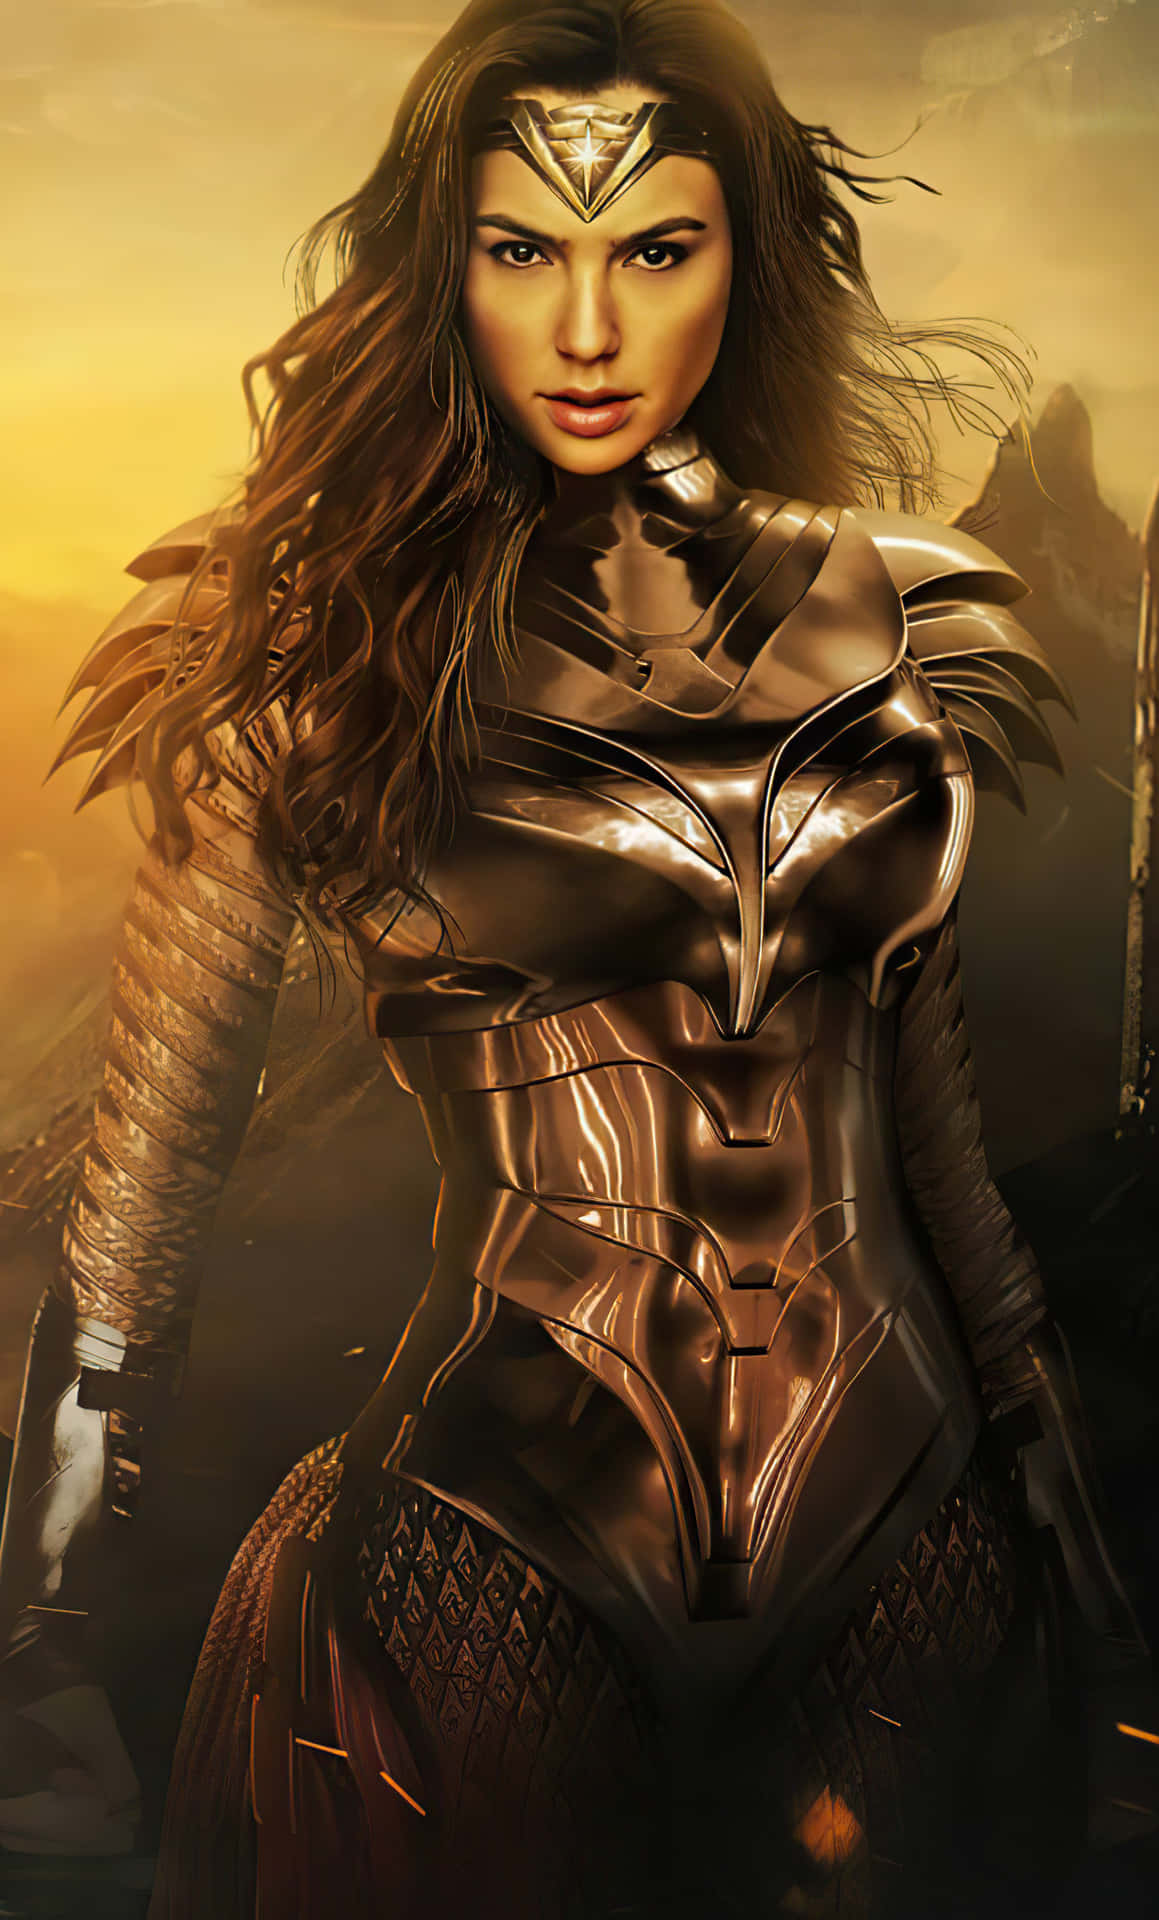 Galgadot Som Diana Prince, Den Amazonske Superhelt Fra Dc's Wonder Woman-franchise